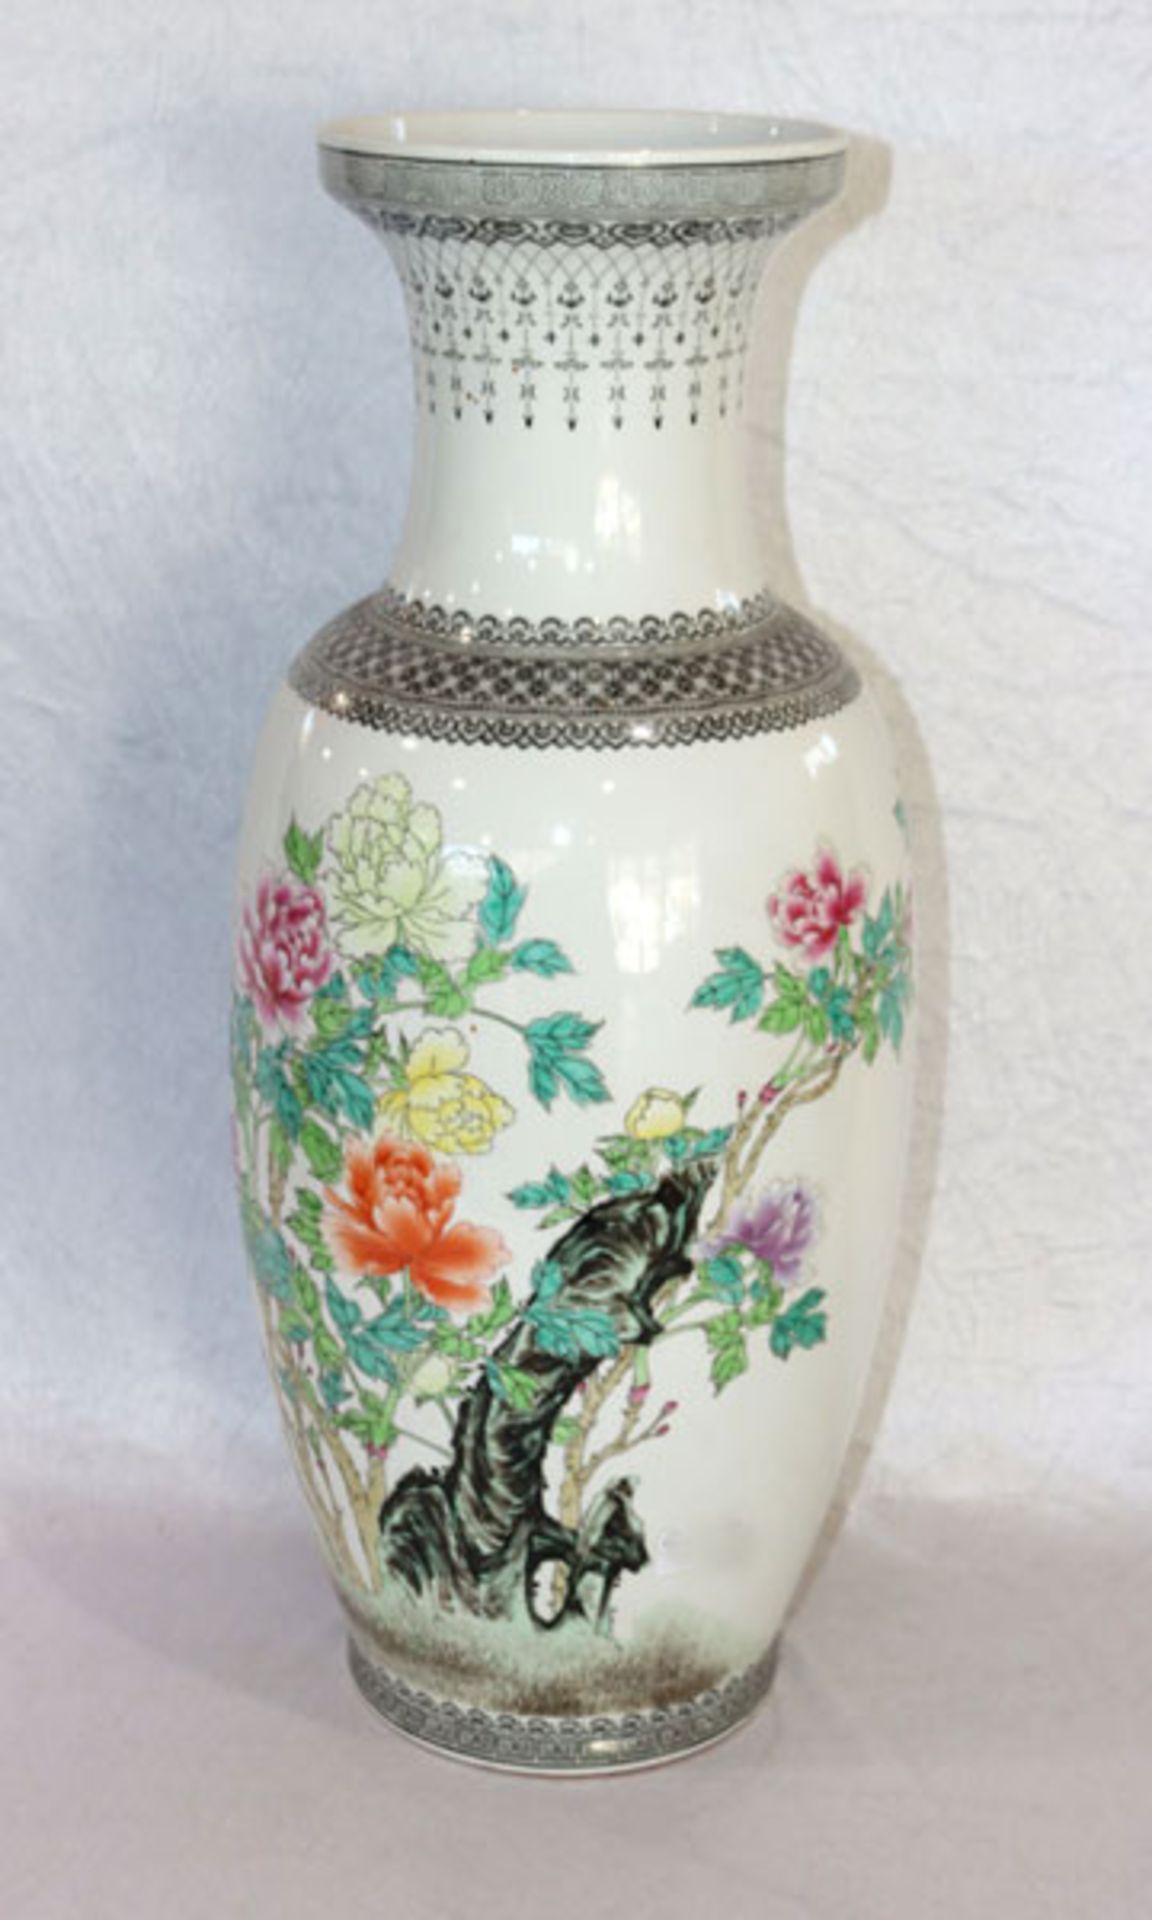 Chinesische Bodenvase mit Floral- und Schriftzeichen-Dekor, H 63 cm, D 27 cm